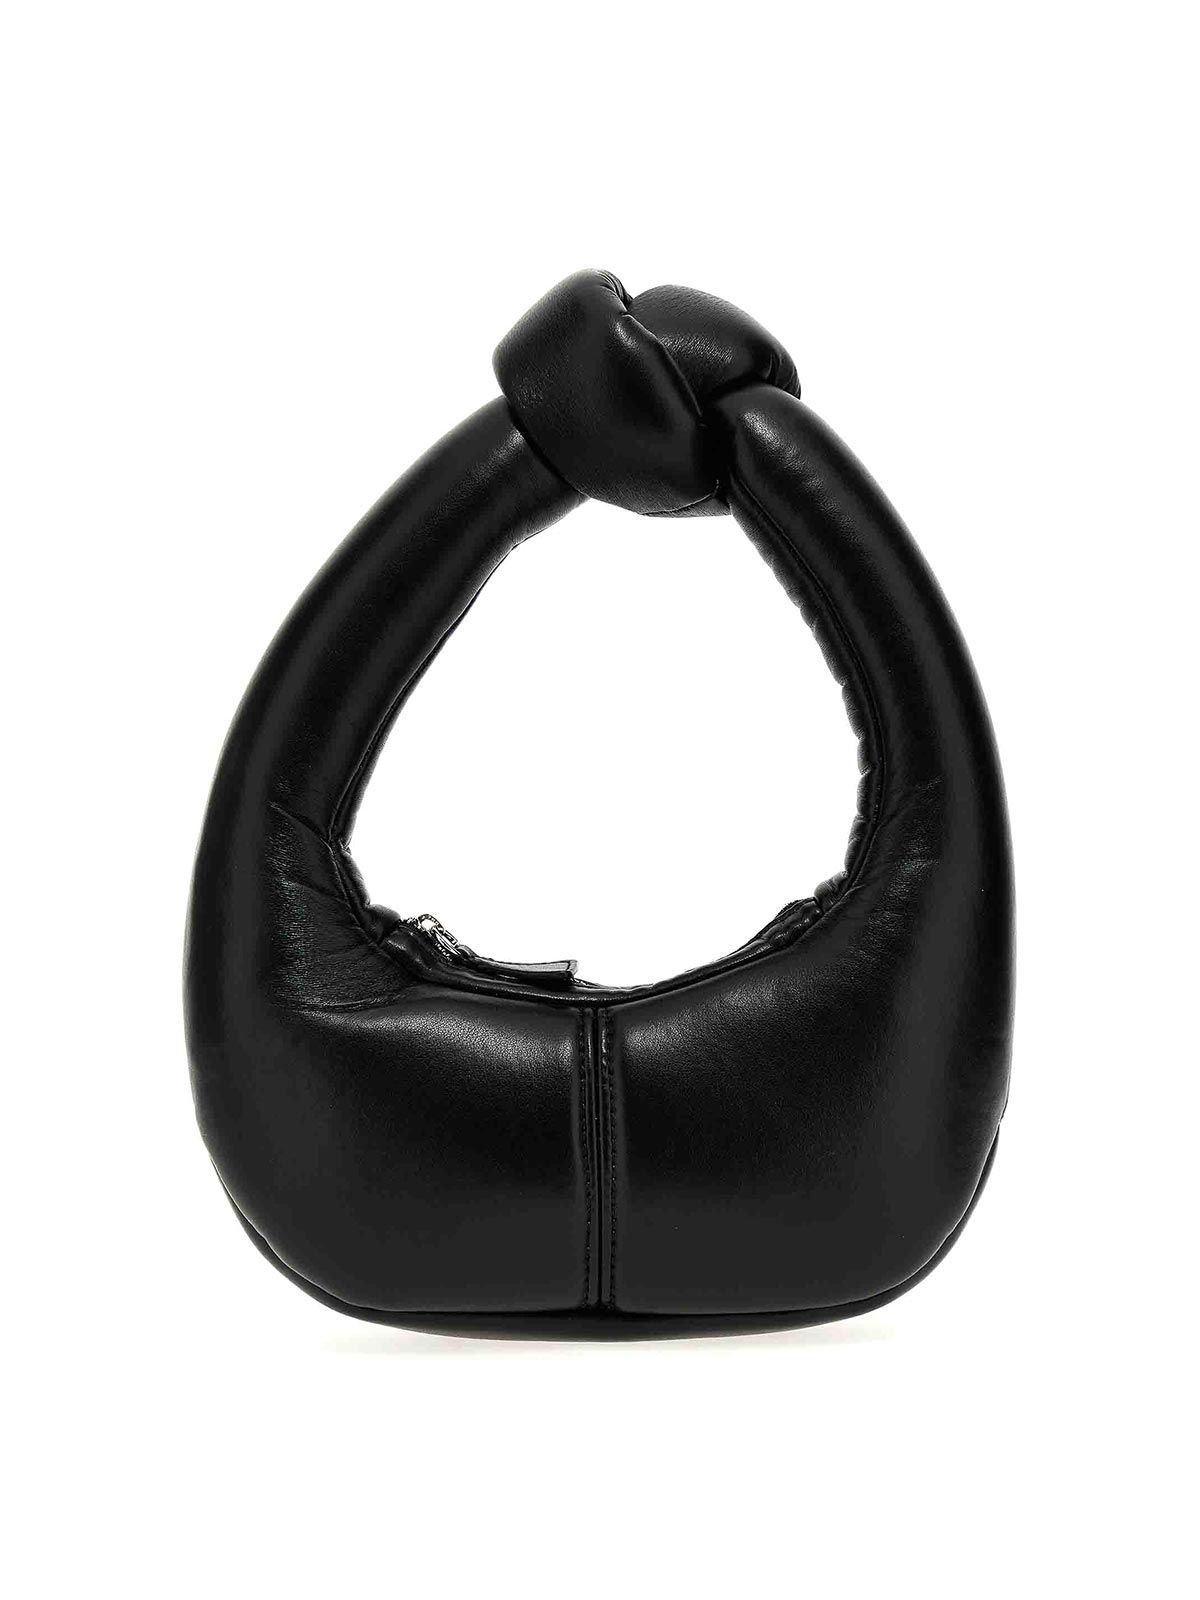 A.w.a.k.e. Mia Small Handbag In Black